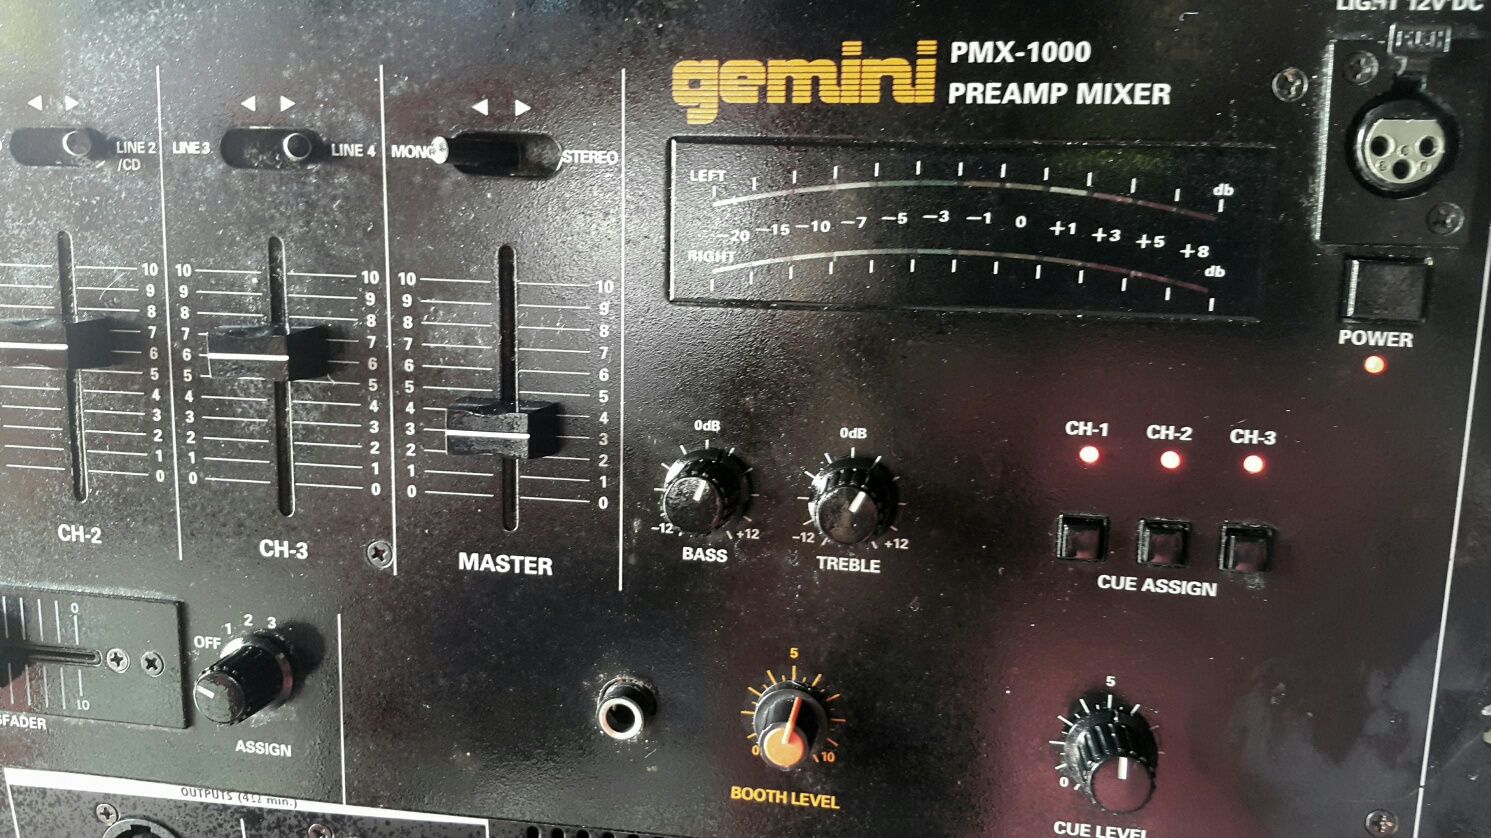 Gemini - 3 kanałowy mikser DJ